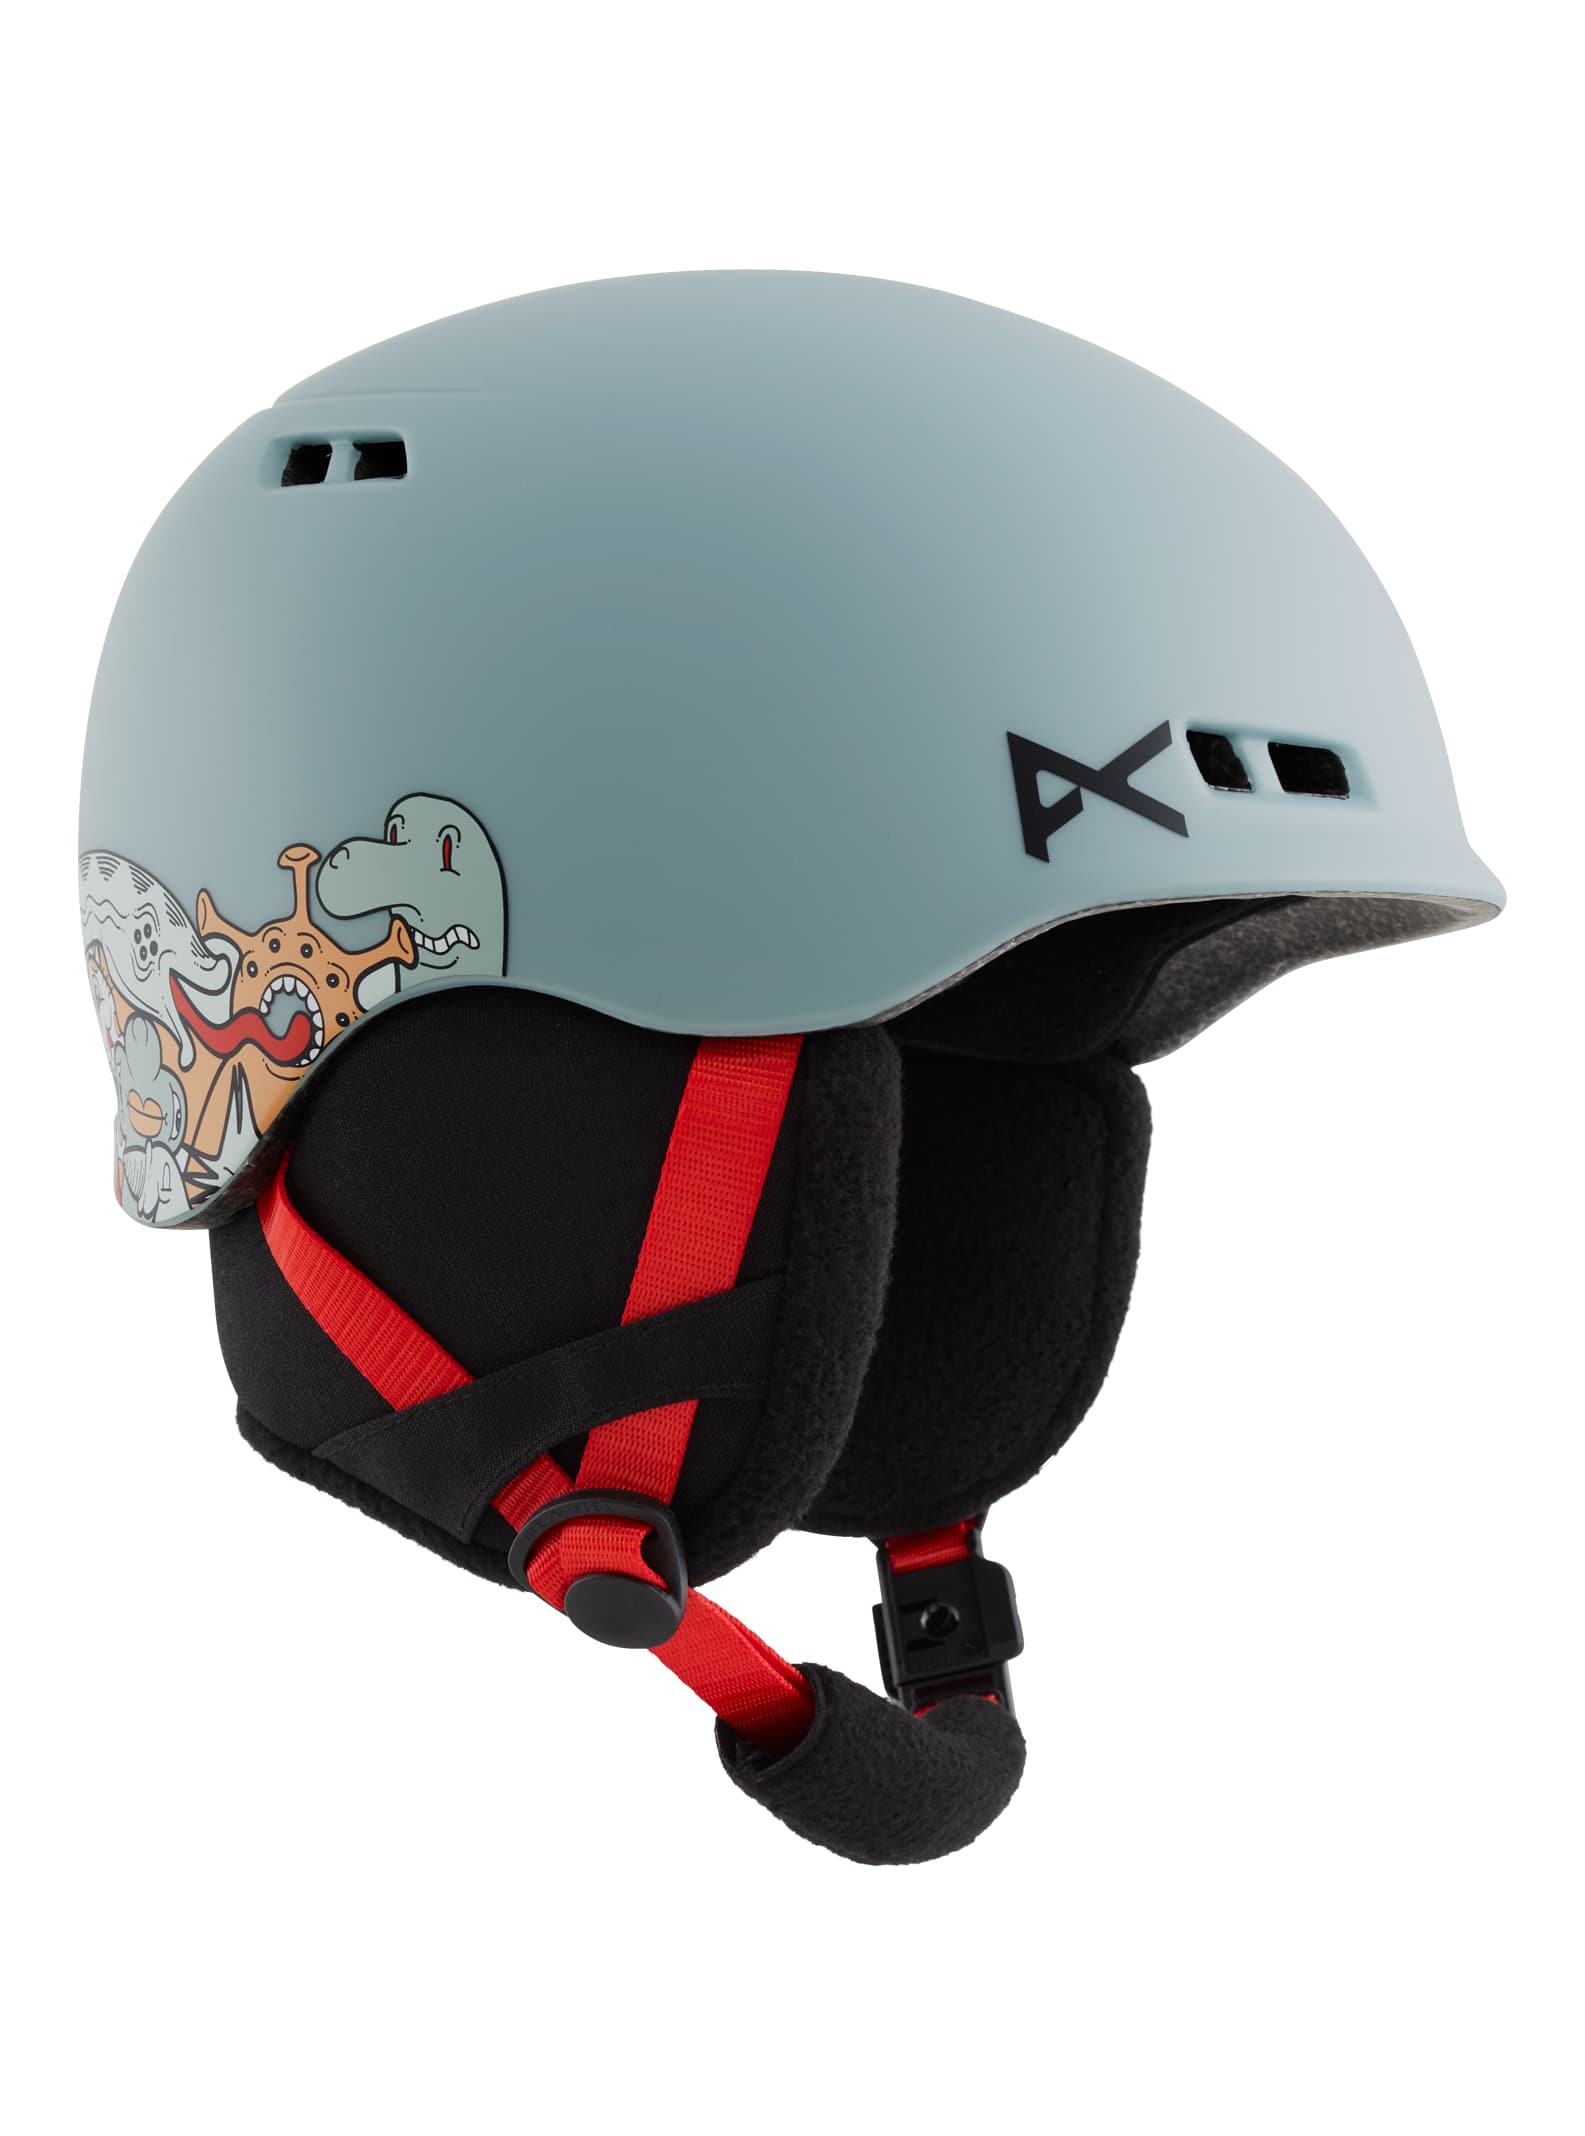 Kids' Anon Burner MIPS Helmet | Burton.com Winter 2021 US